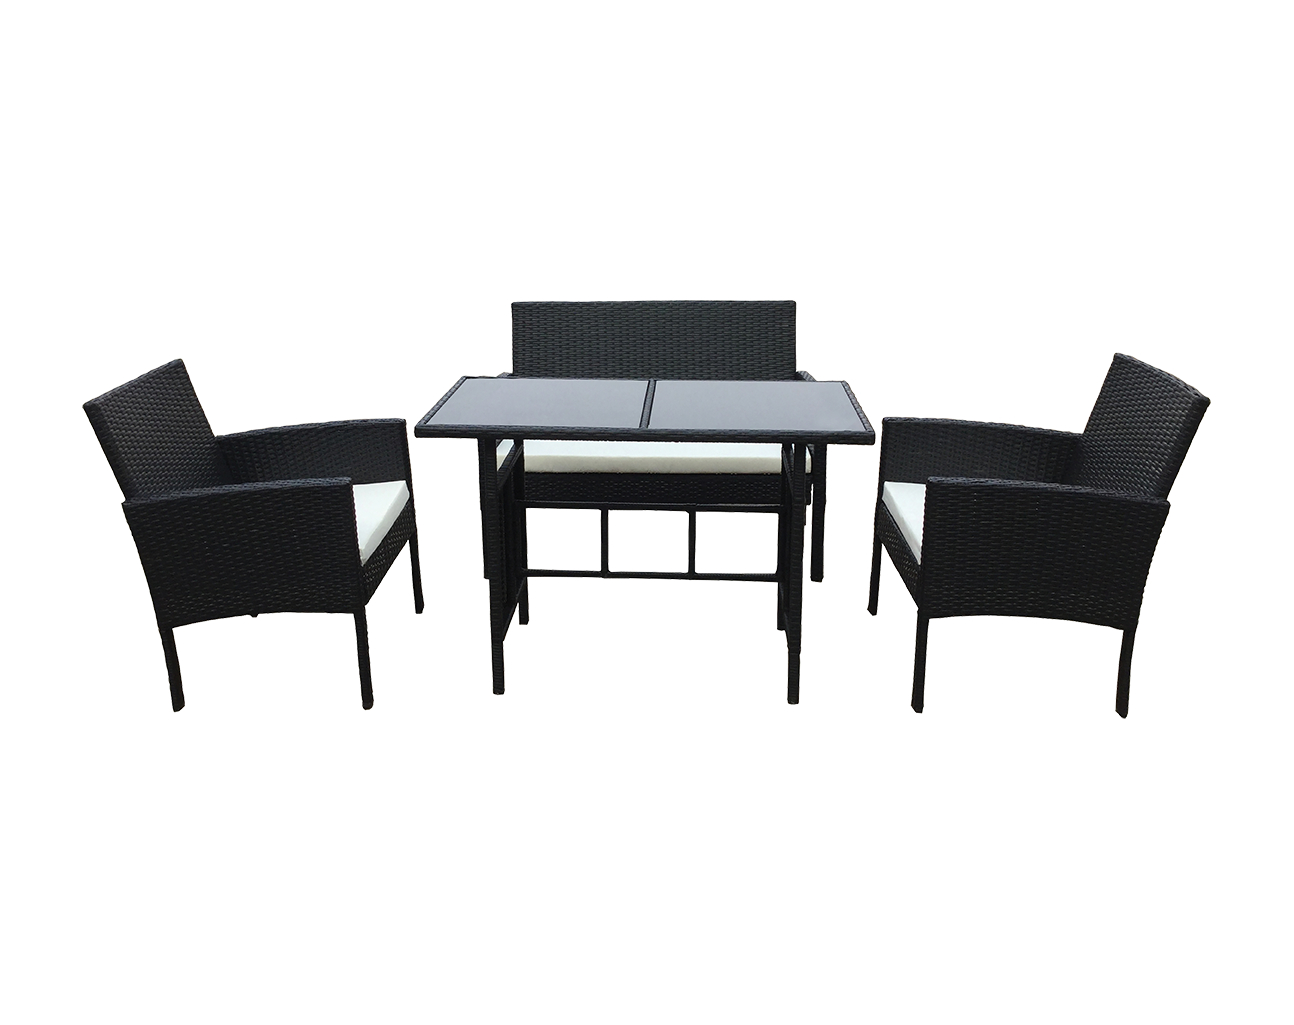 סט גינה בדמוי ראטן שחור בשילוב כריות בצבע לבן, הכולל שולחן ספה דו מושבית ו 2 כורסאות.